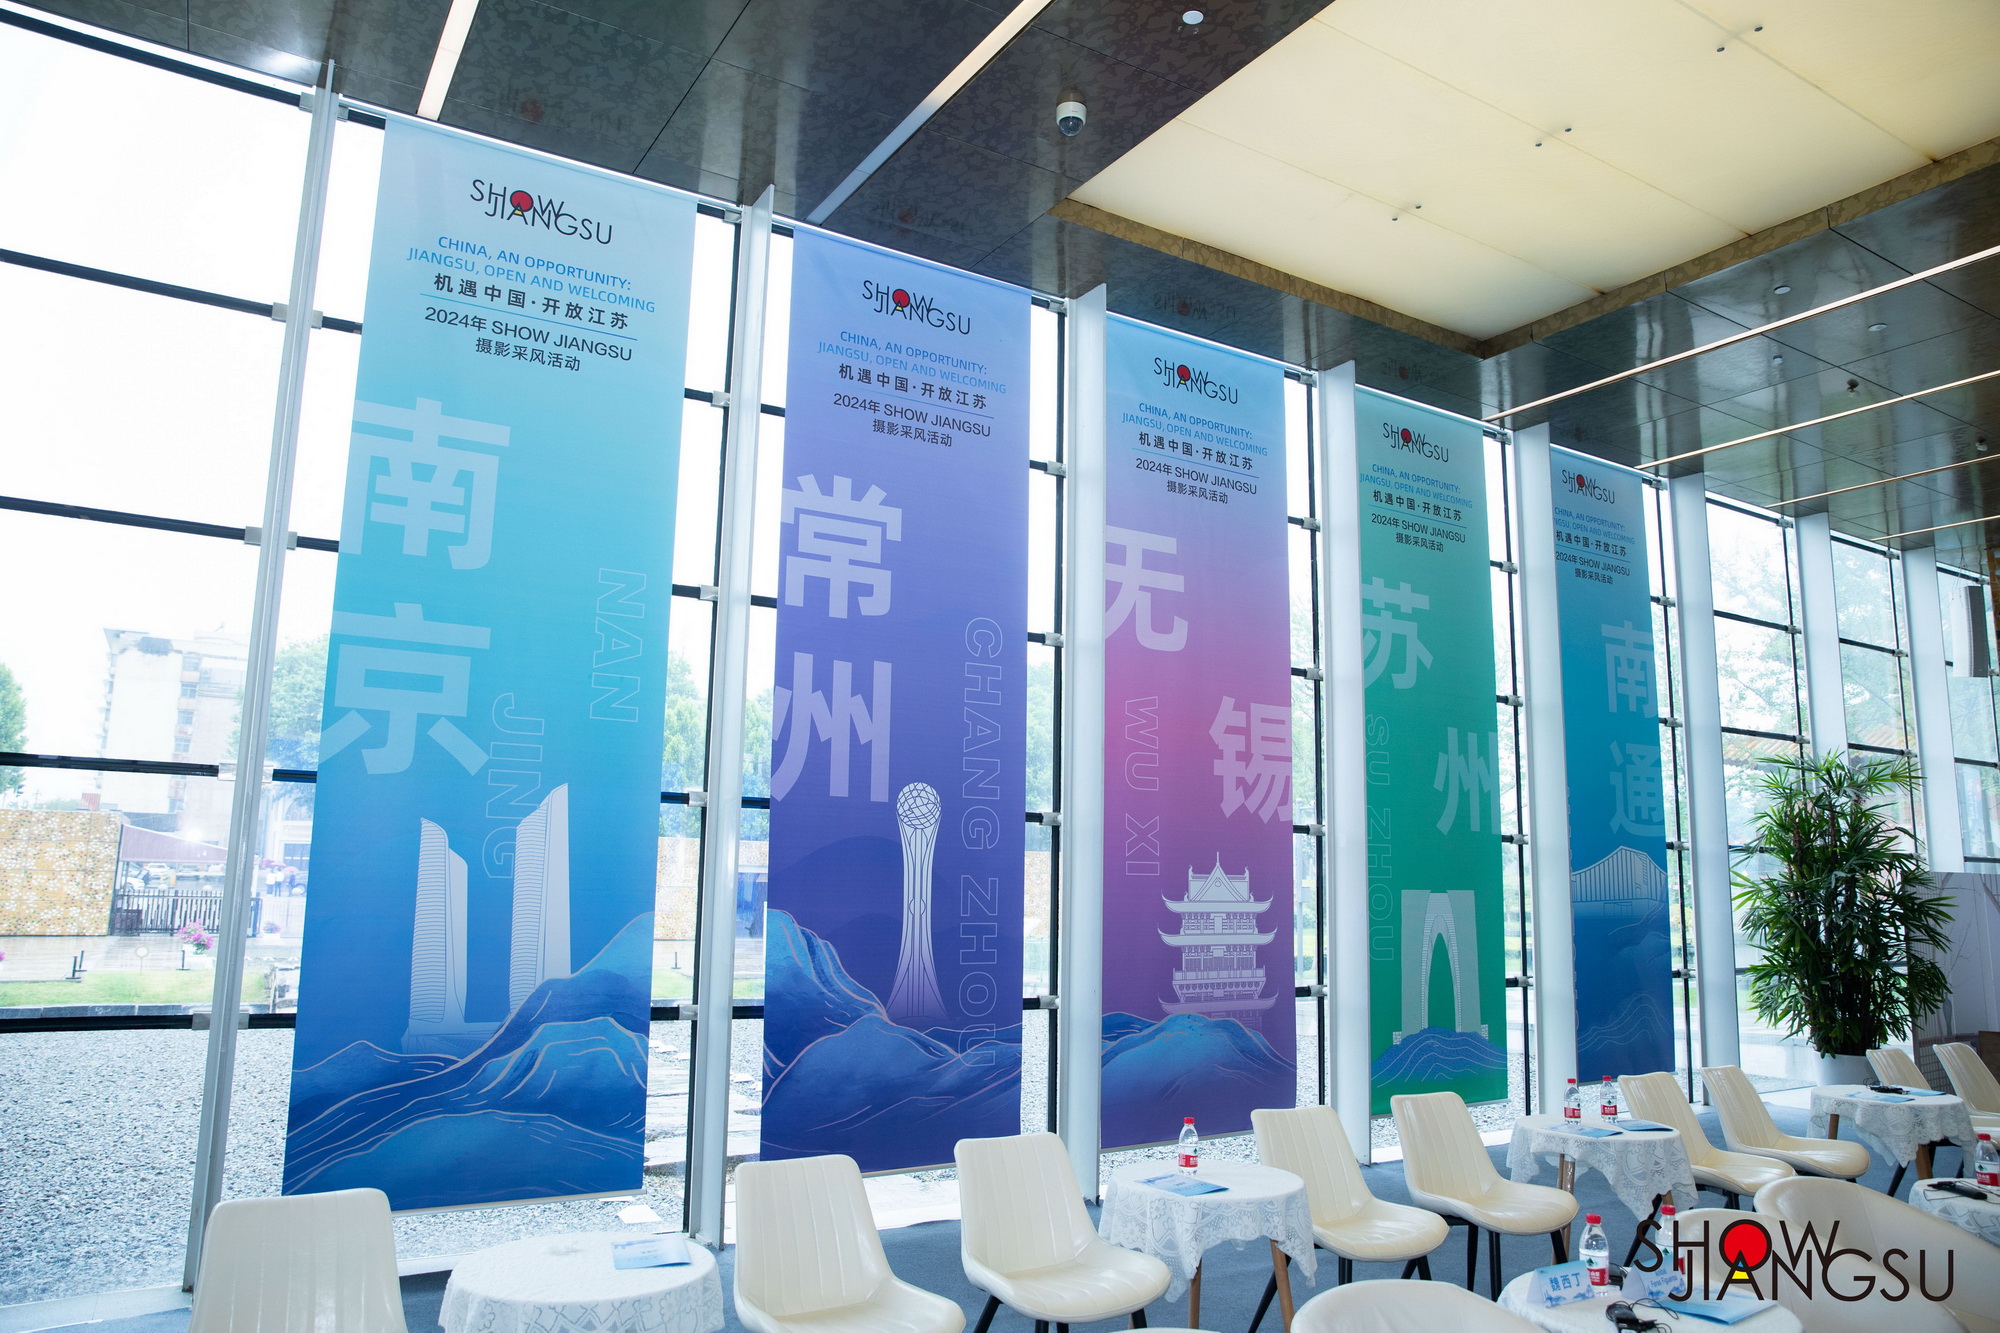 "China, An Opportunity: Jiangsu Open and Welcoming": 2024 SHOW JIANGSU Photography Project Highlights Five "Trillion-Yuan Cities"